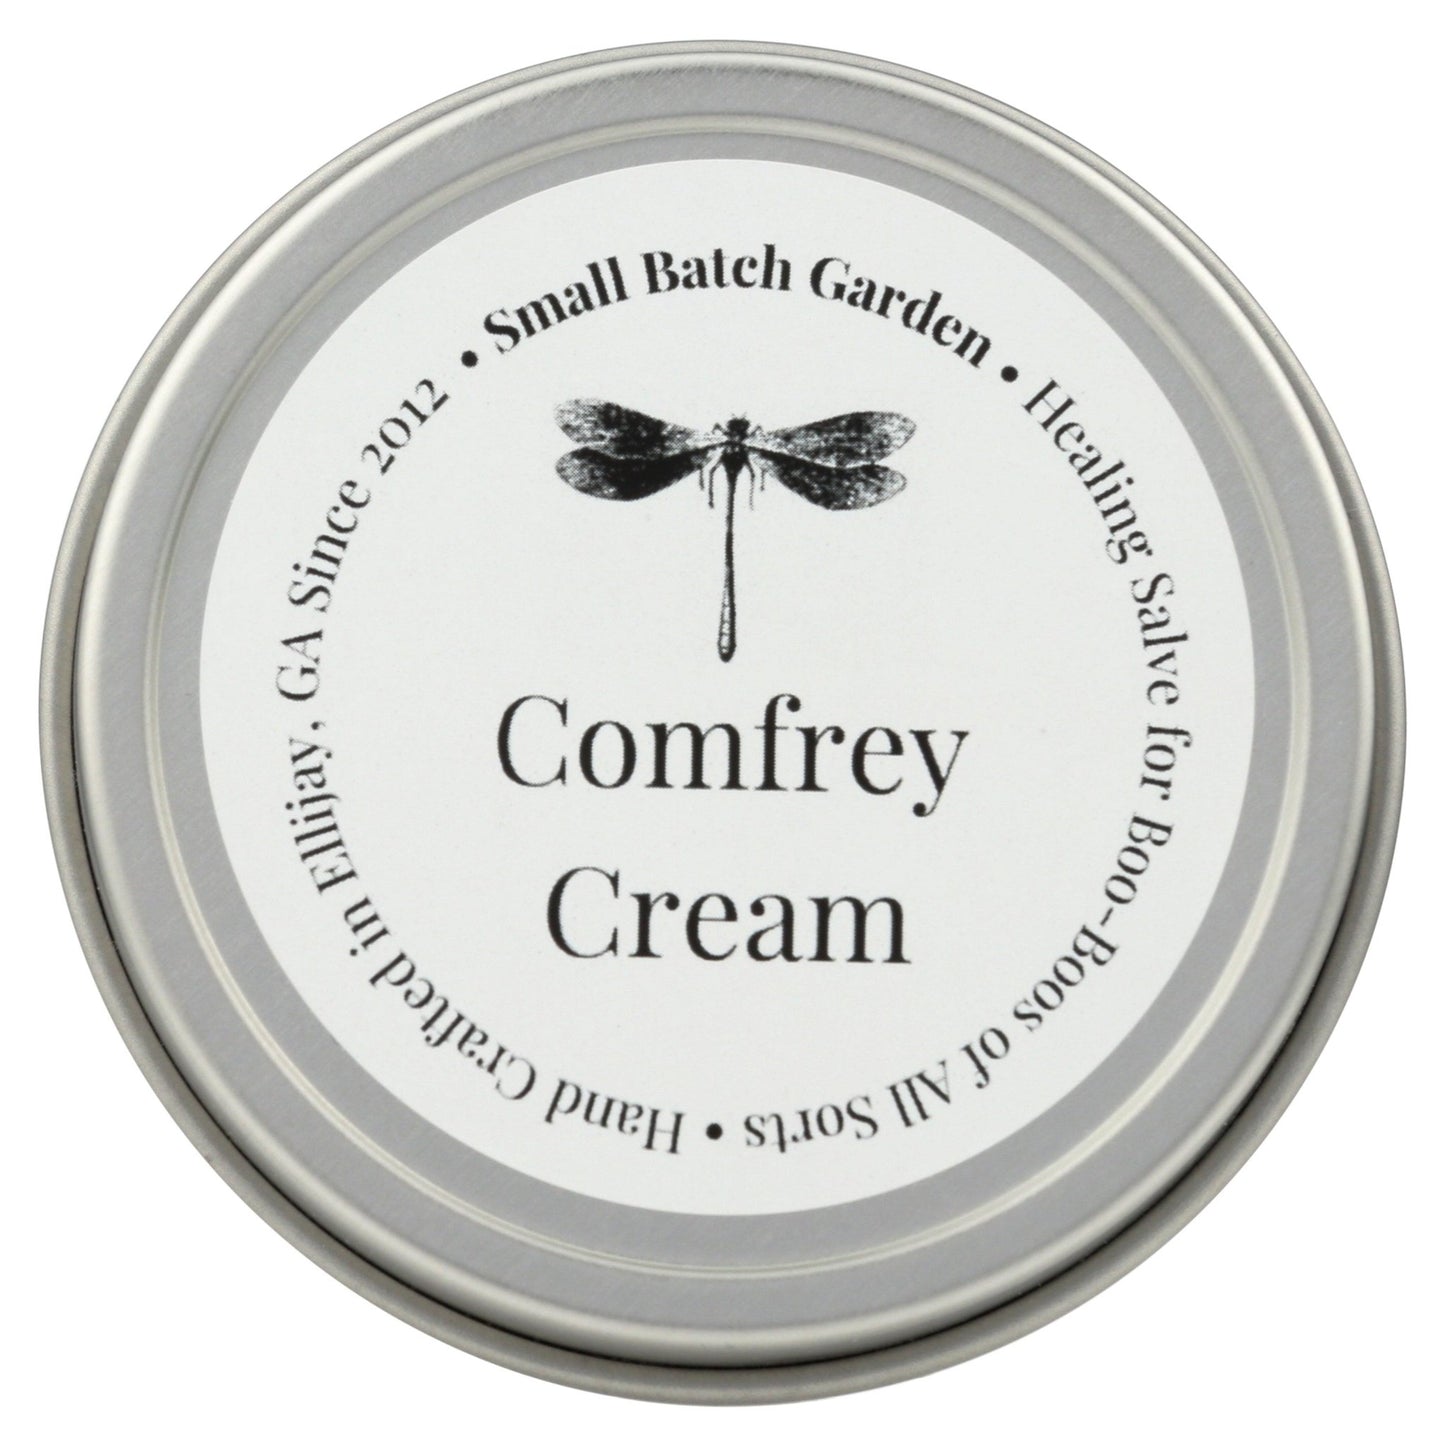 Comfrey Cream ~ Soothing & Organic Herbal Salve - Small Batch Garden